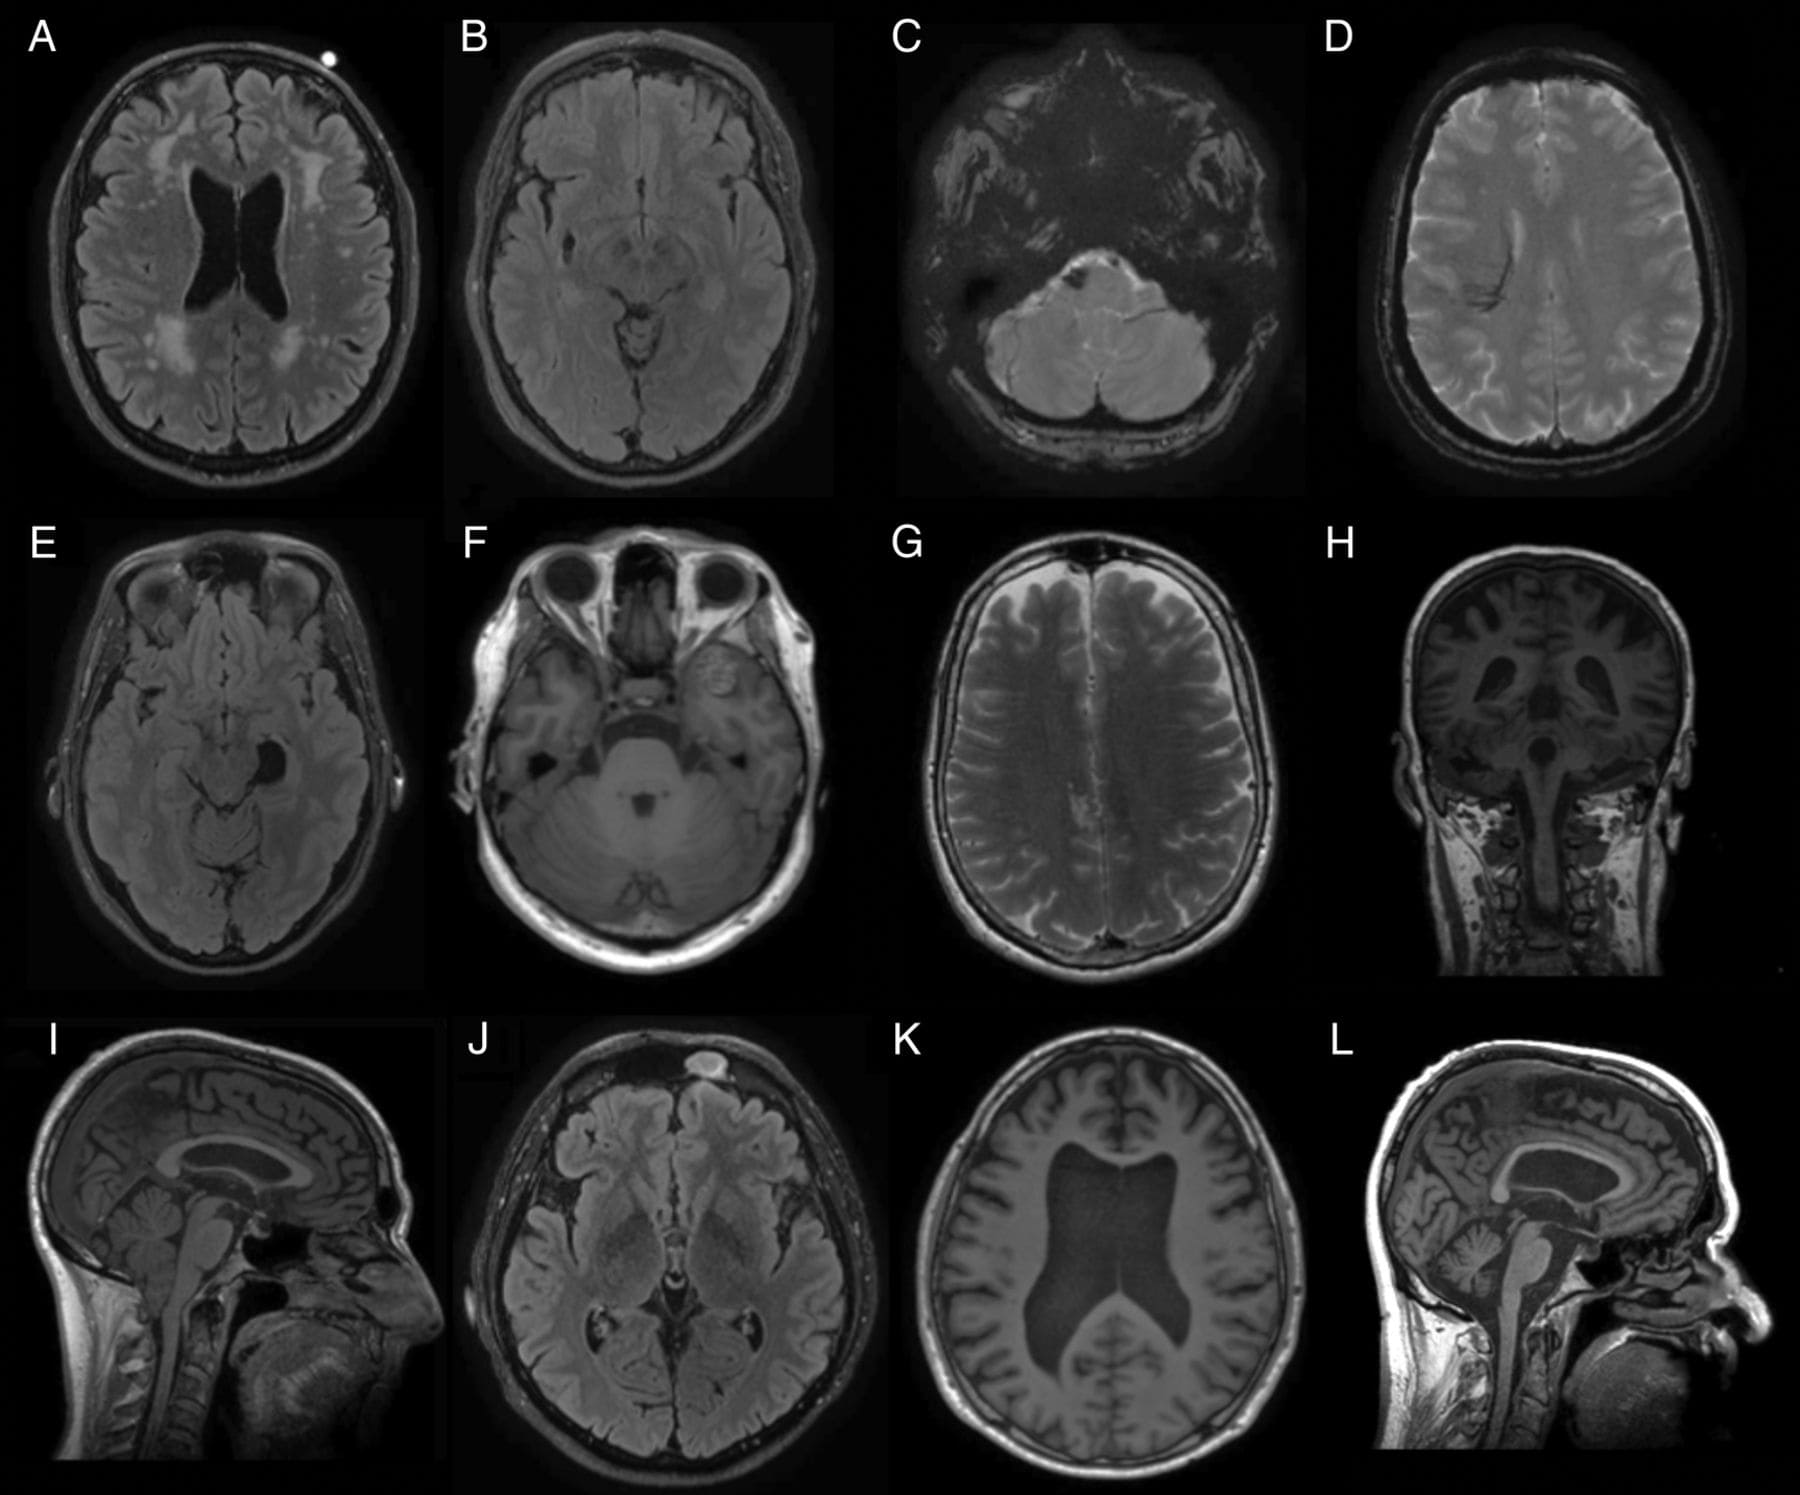 Патологии на мрт. Кт томограмма головного мозга. Компьютерная томография кт головного мозга. Рентгеновская компьютерная томография головного мозга. Магнито-резонансная томография головного мозга.